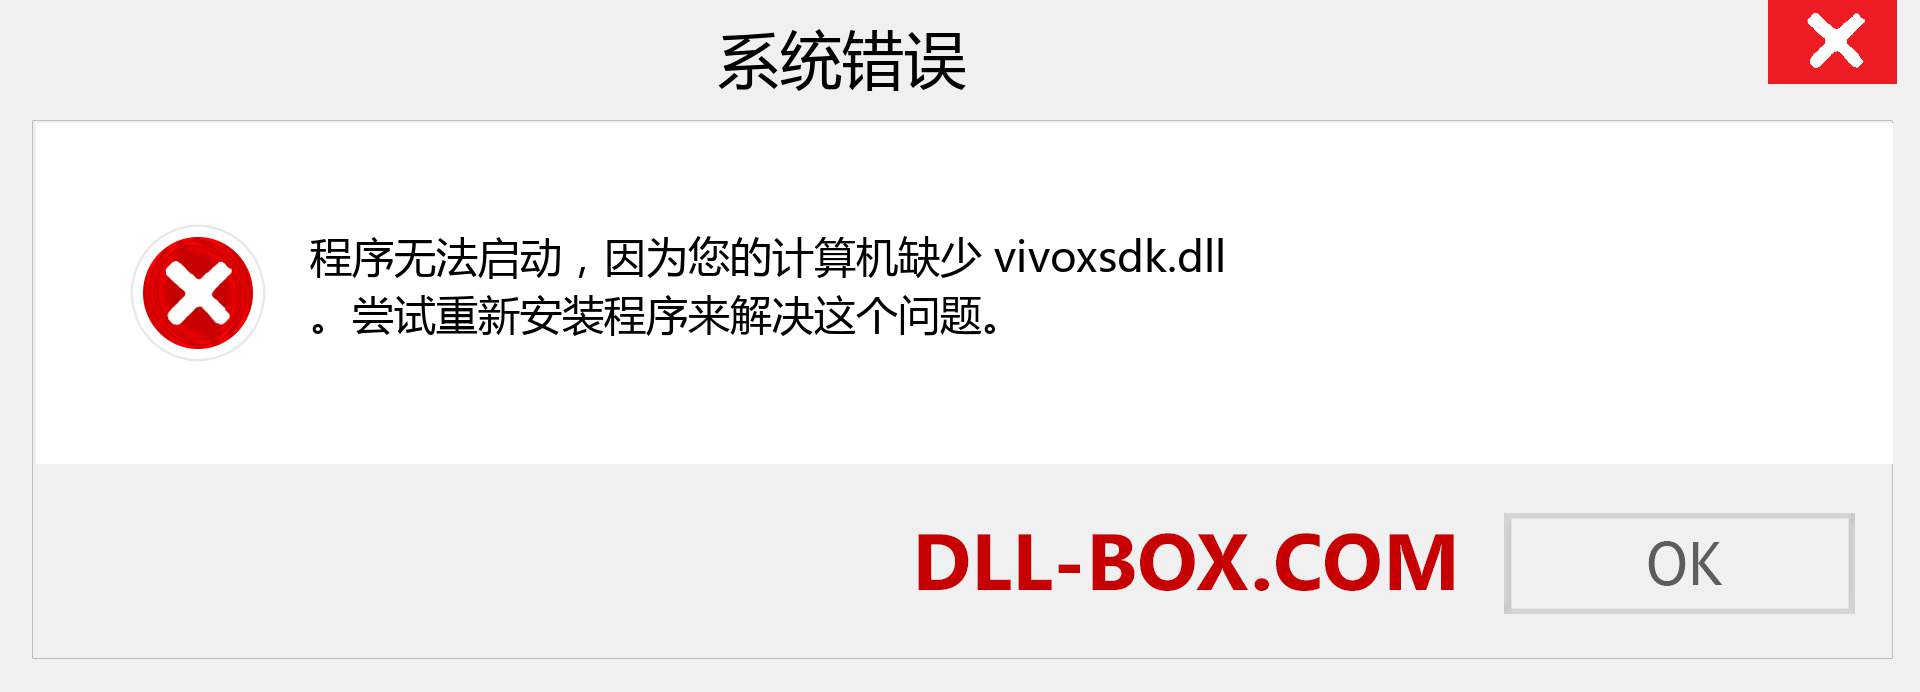 vivoxsdk.dll 文件丢失？。 适用于 Windows 7、8、10 的下载 - 修复 Windows、照片、图像上的 vivoxsdk dll 丢失错误